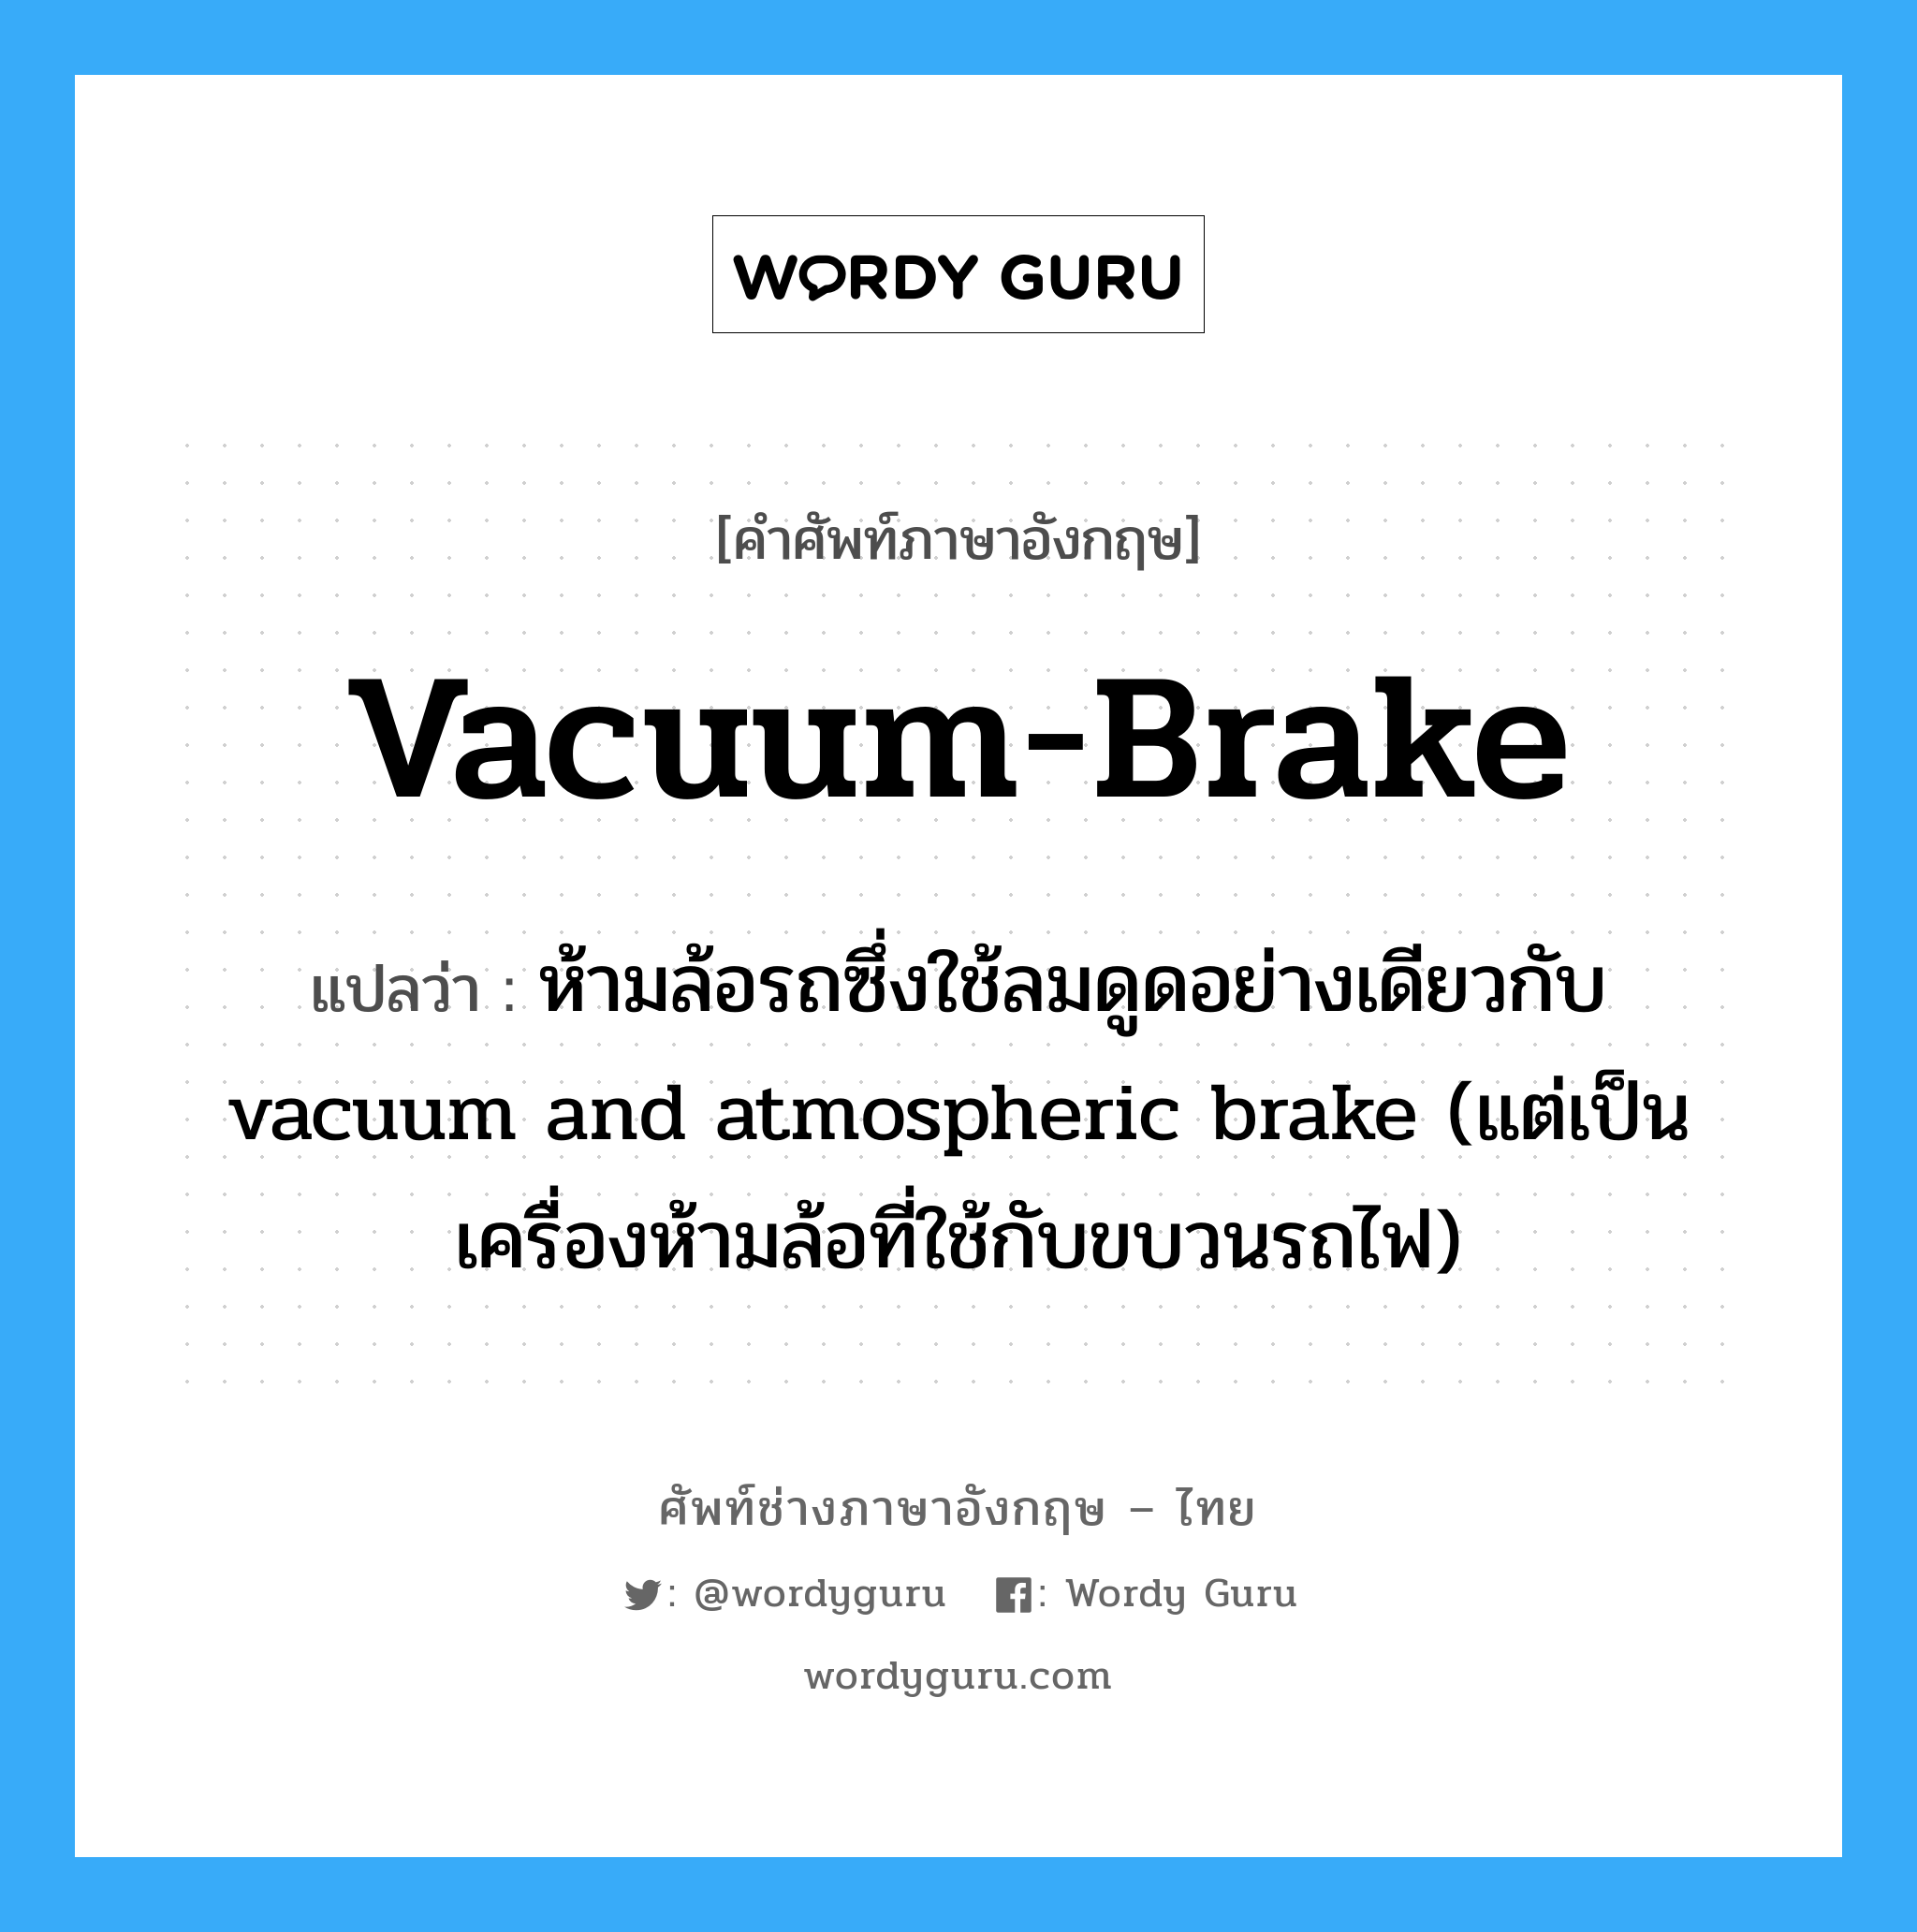 ห้ามล้อรถซึ่งใช้ลมดูดอย่างเดียวกับ vacuum and atmospheric brake (แต่เป็นเครื่องห้ามล้อที่ใช้กับขบวนรถไฟ) ภาษาอังกฤษ?, คำศัพท์ช่างภาษาอังกฤษ - ไทย ห้ามล้อรถซึ่งใช้ลมดูดอย่างเดียวกับ vacuum and atmospheric brake (แต่เป็นเครื่องห้ามล้อที่ใช้กับขบวนรถไฟ) คำศัพท์ภาษาอังกฤษ ห้ามล้อรถซึ่งใช้ลมดูดอย่างเดียวกับ vacuum and atmospheric brake (แต่เป็นเครื่องห้ามล้อที่ใช้กับขบวนรถไฟ) แปลว่า vacuum-brake